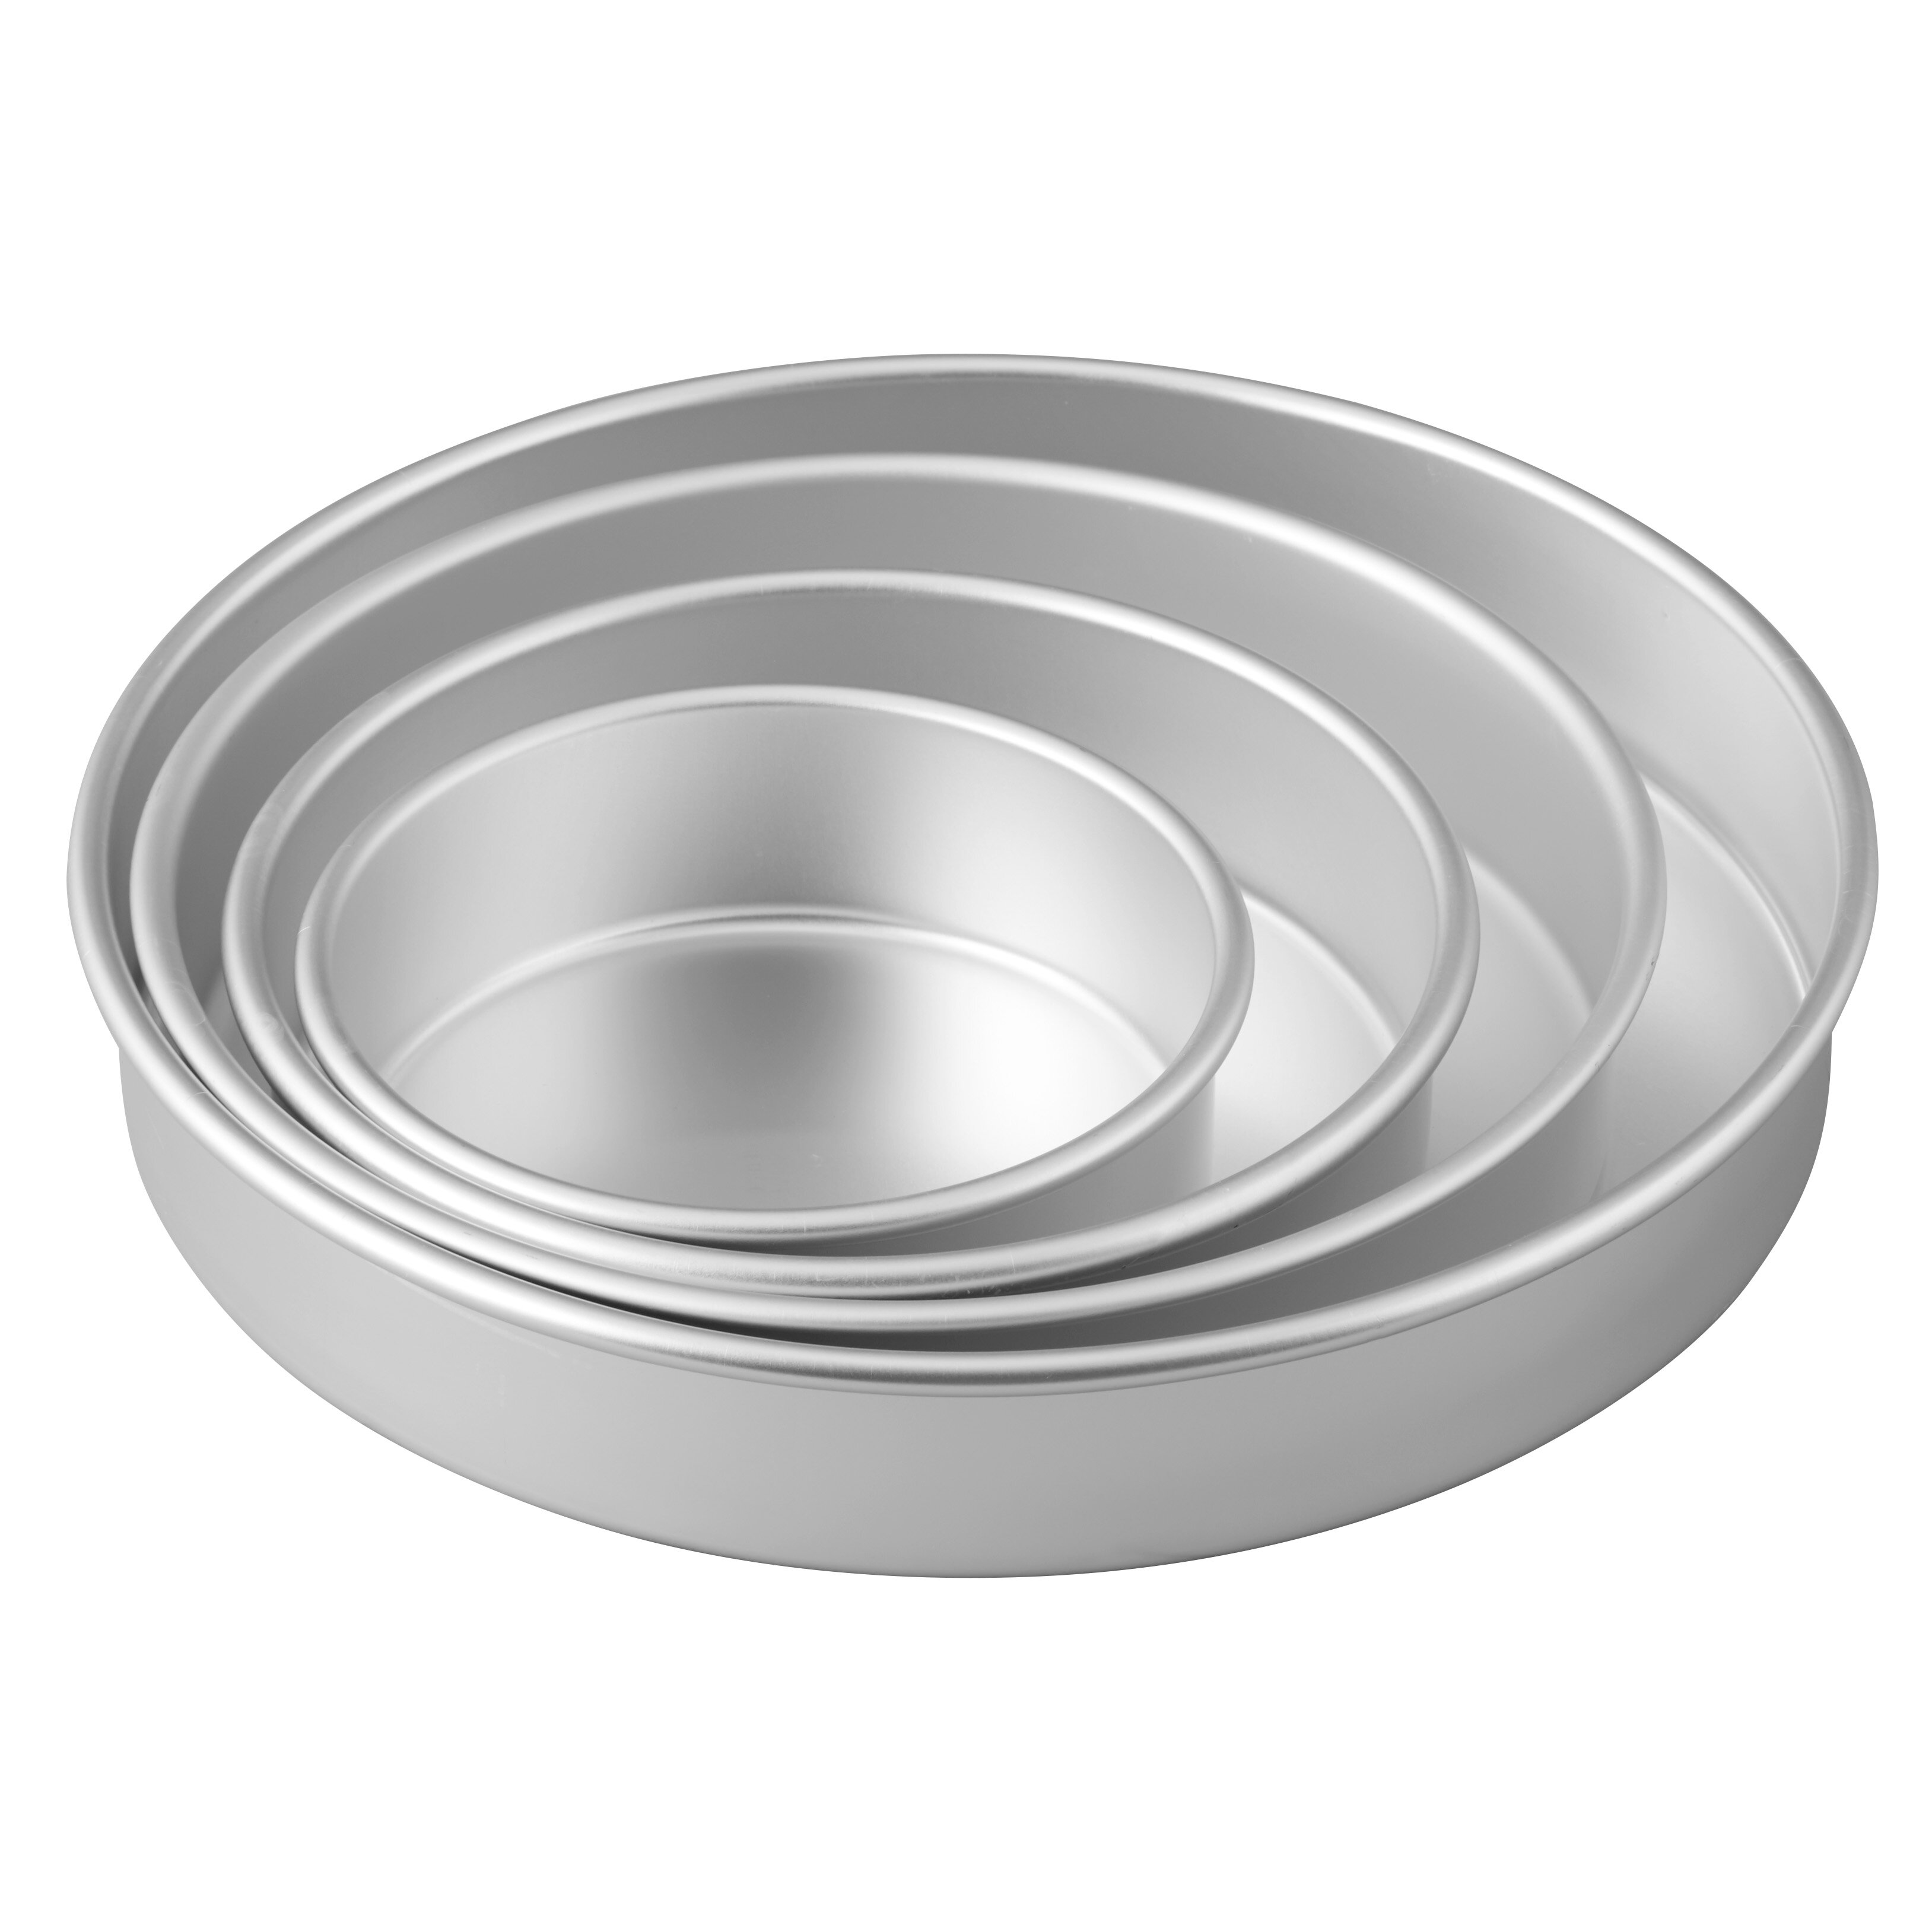 Wilton 4 Piece Aluminum Non-Stick Round Cake Pan Set & Reviews